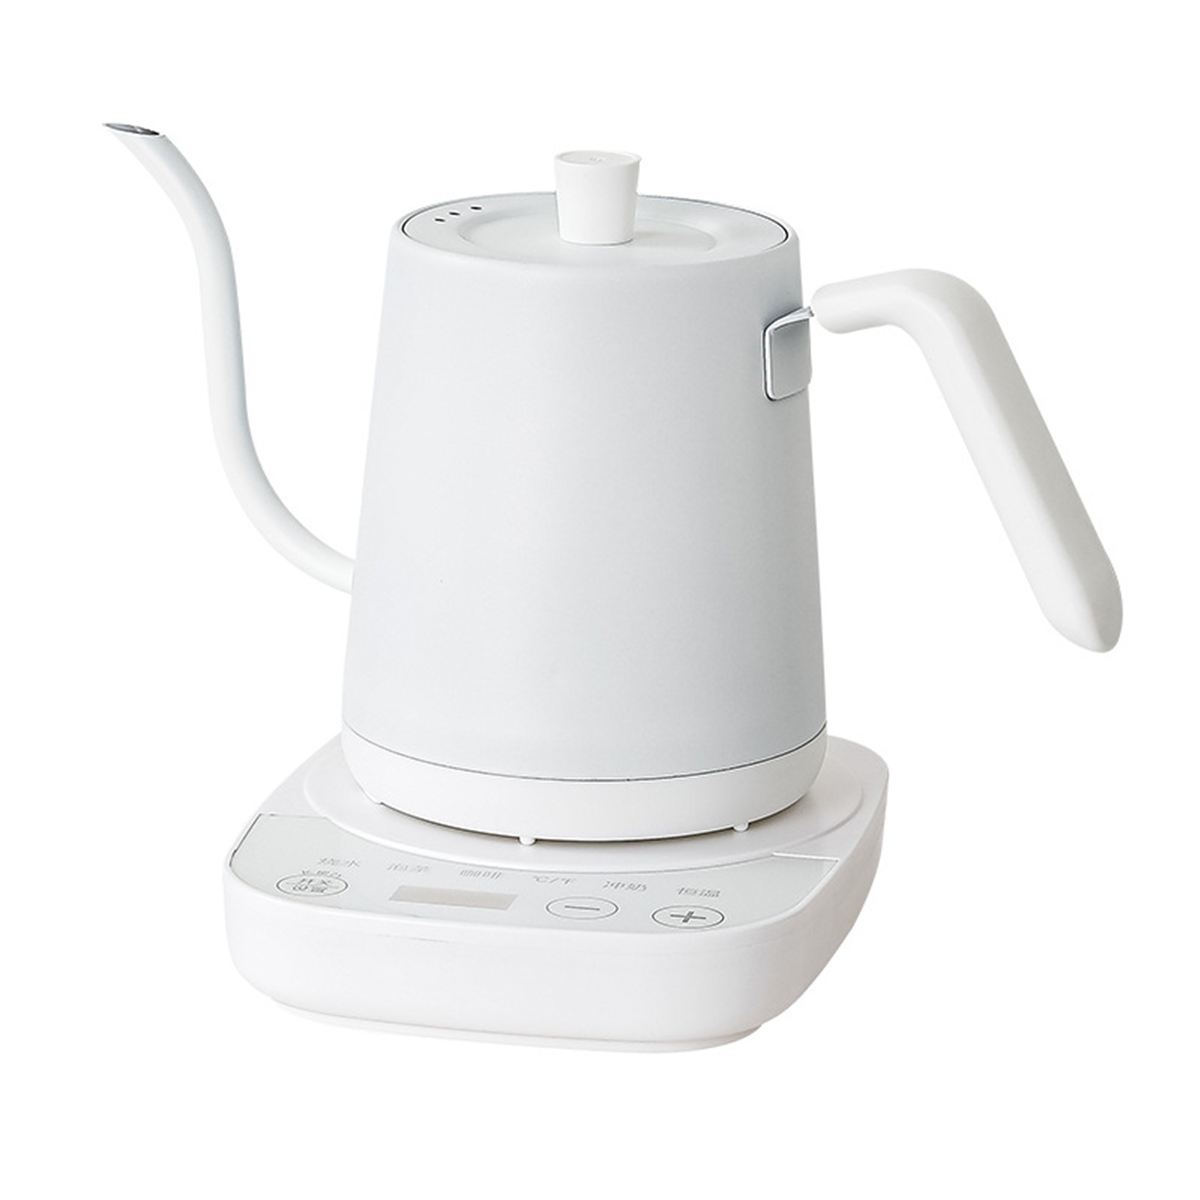 präziser Wasserkocher, Thermostat-Wasserkocher Intelligenter mit - Temperaturregelung BRIGHTAKE Edelstahl-Wasserkocher Weiß